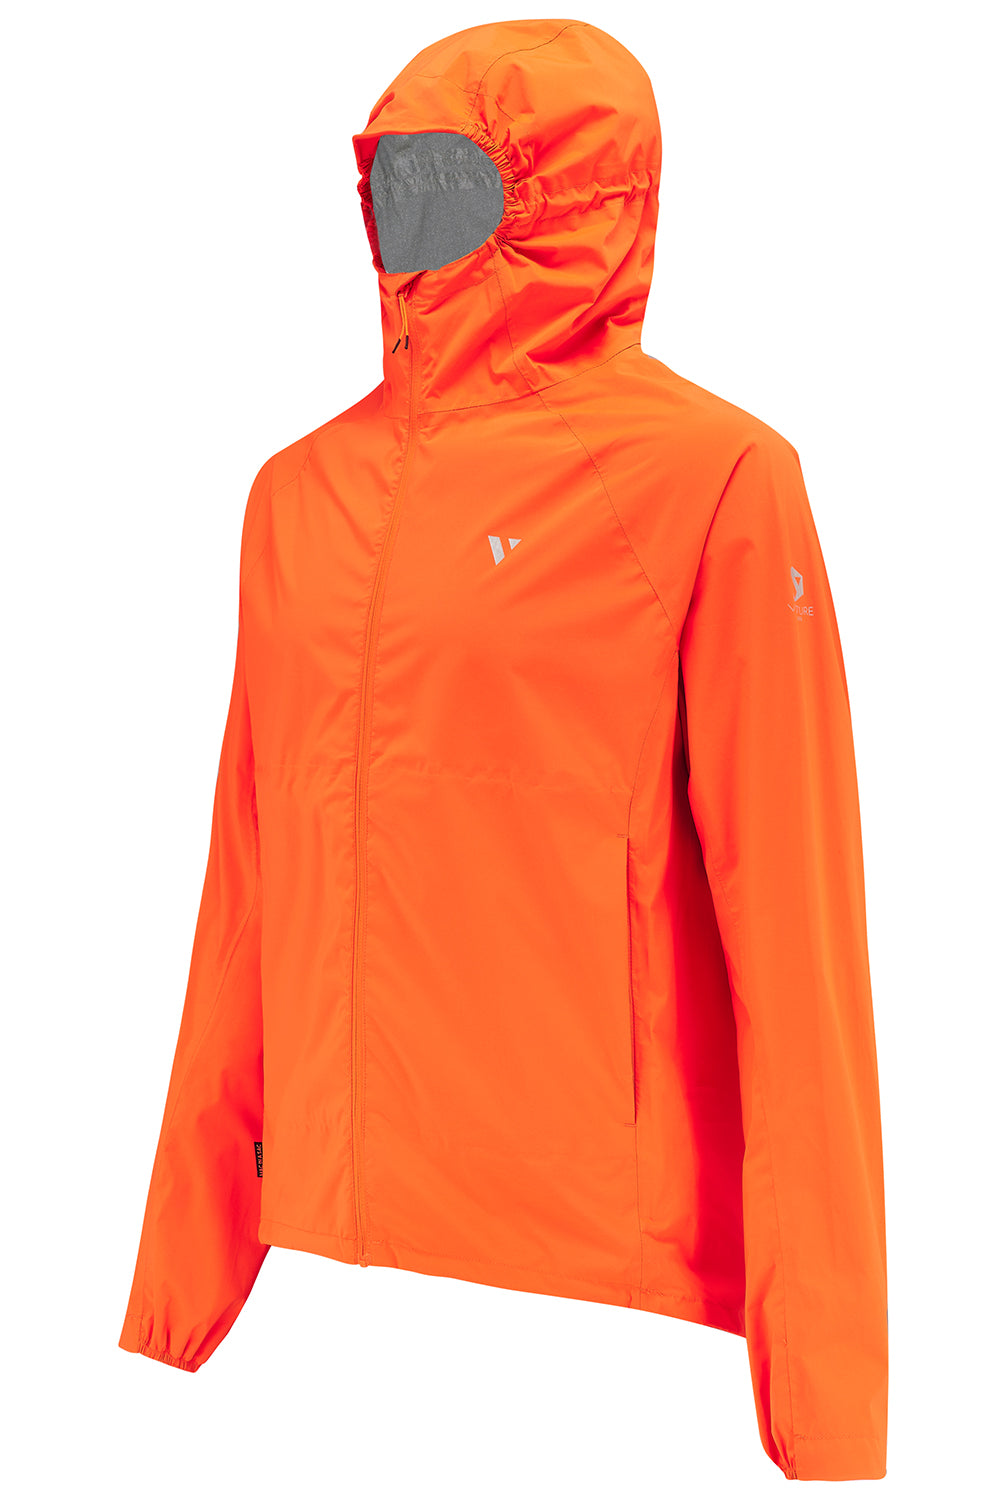 Ultralite - Men's Running Jacket - Neon Orange